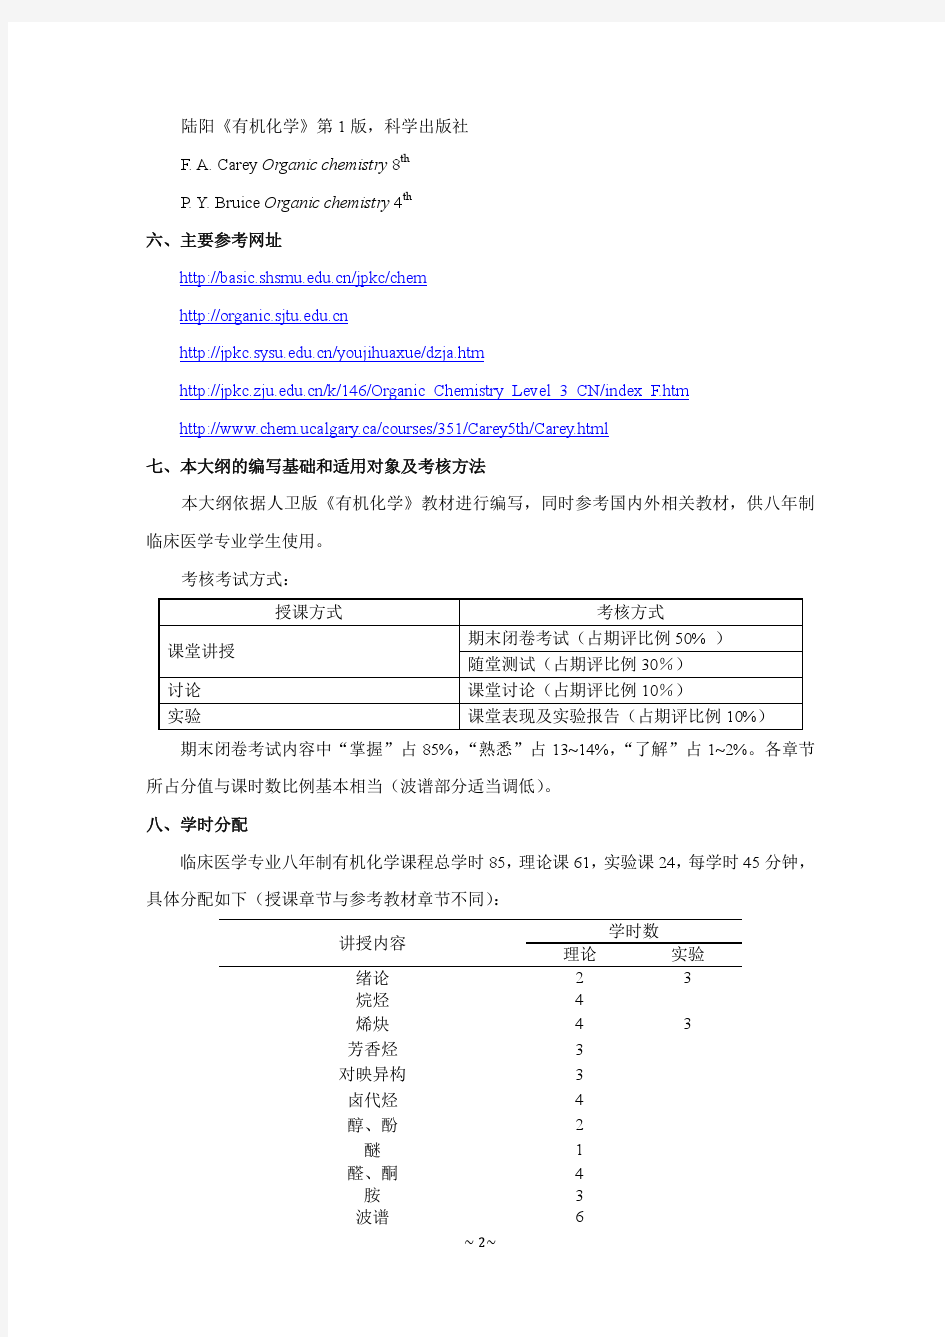 临床医学八年制有机化学教学大纲中文版